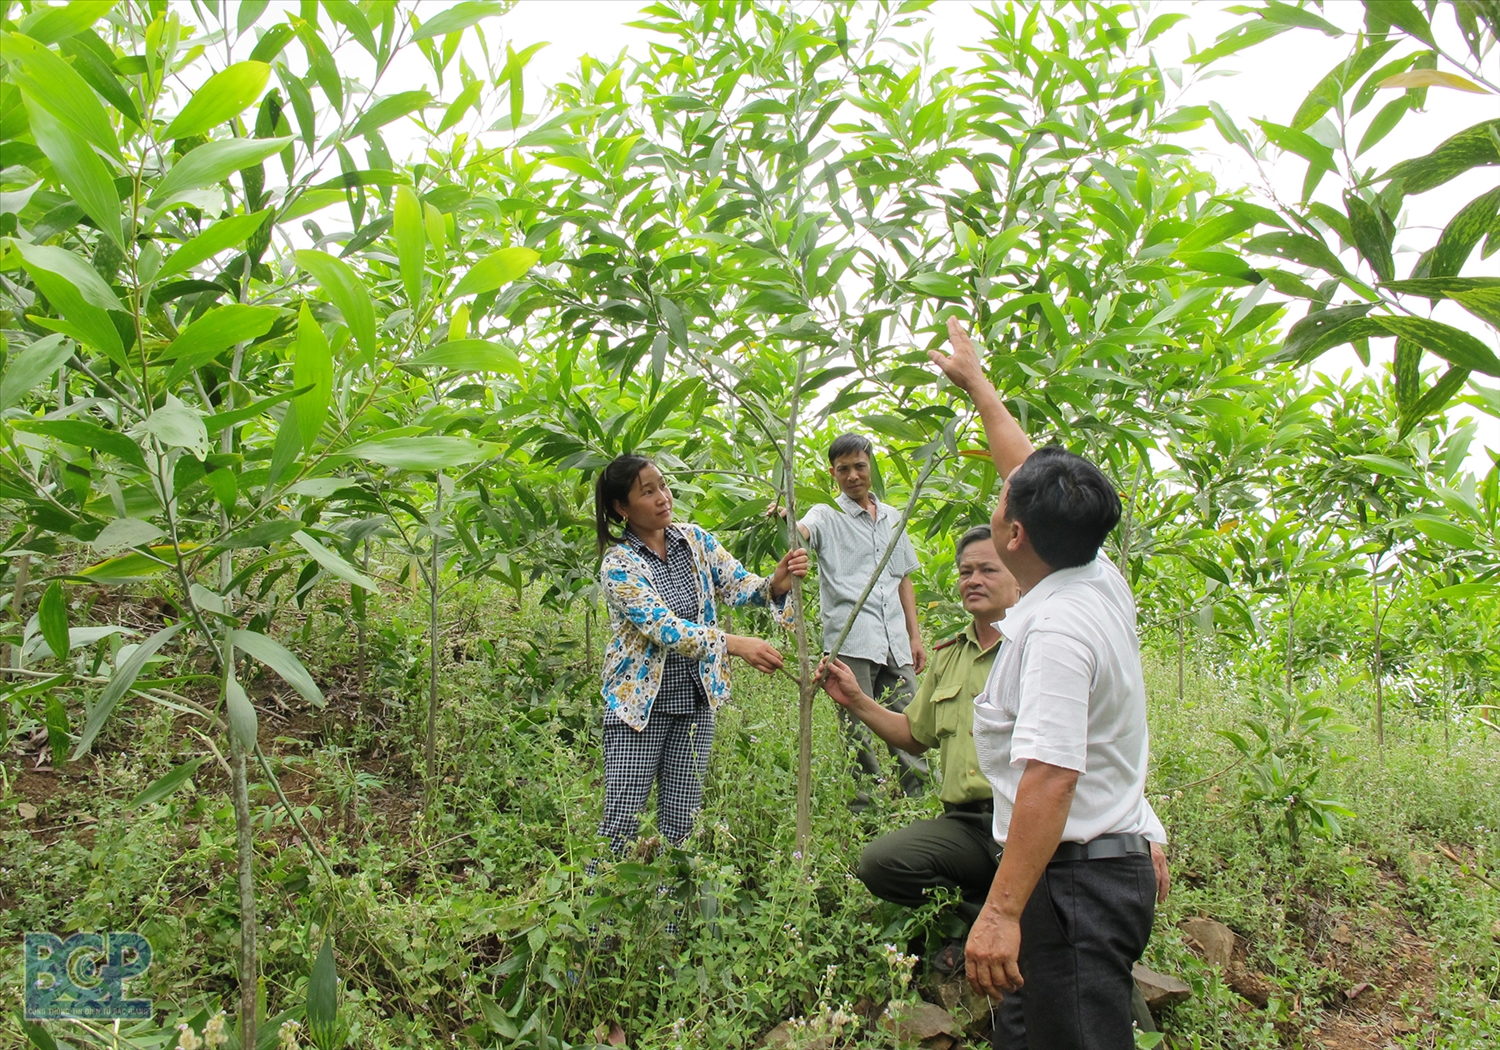 Tỉnh Quảng Ngãi sẽ tập trung hỗ trợ người dân phát triển sản xuất nông, lâm nghiệp bền vững